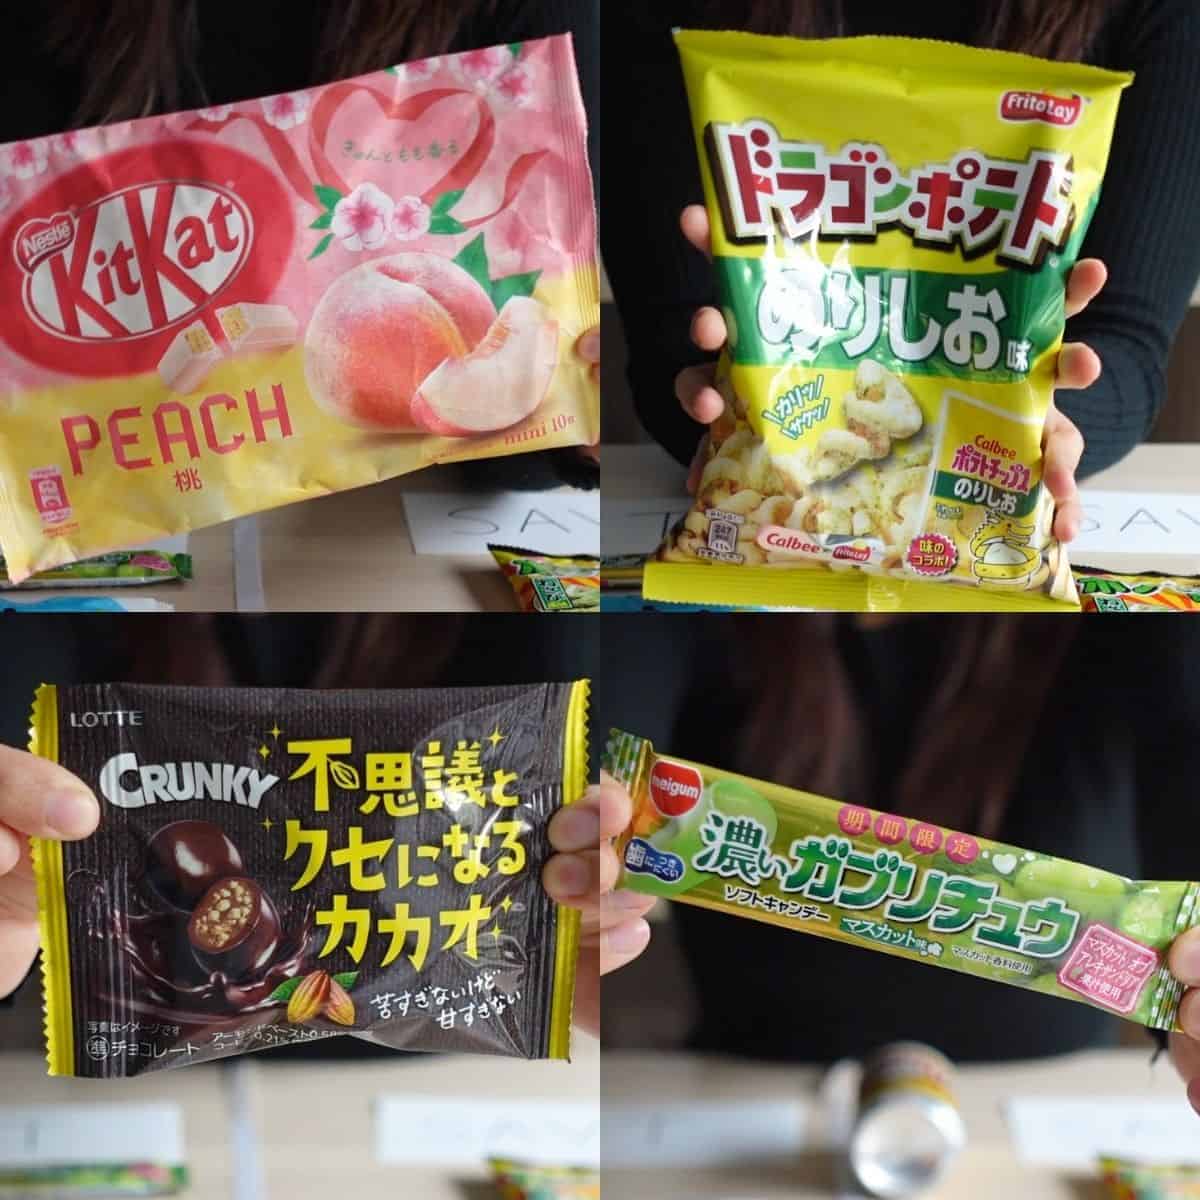 Tokyo Treat junky snack